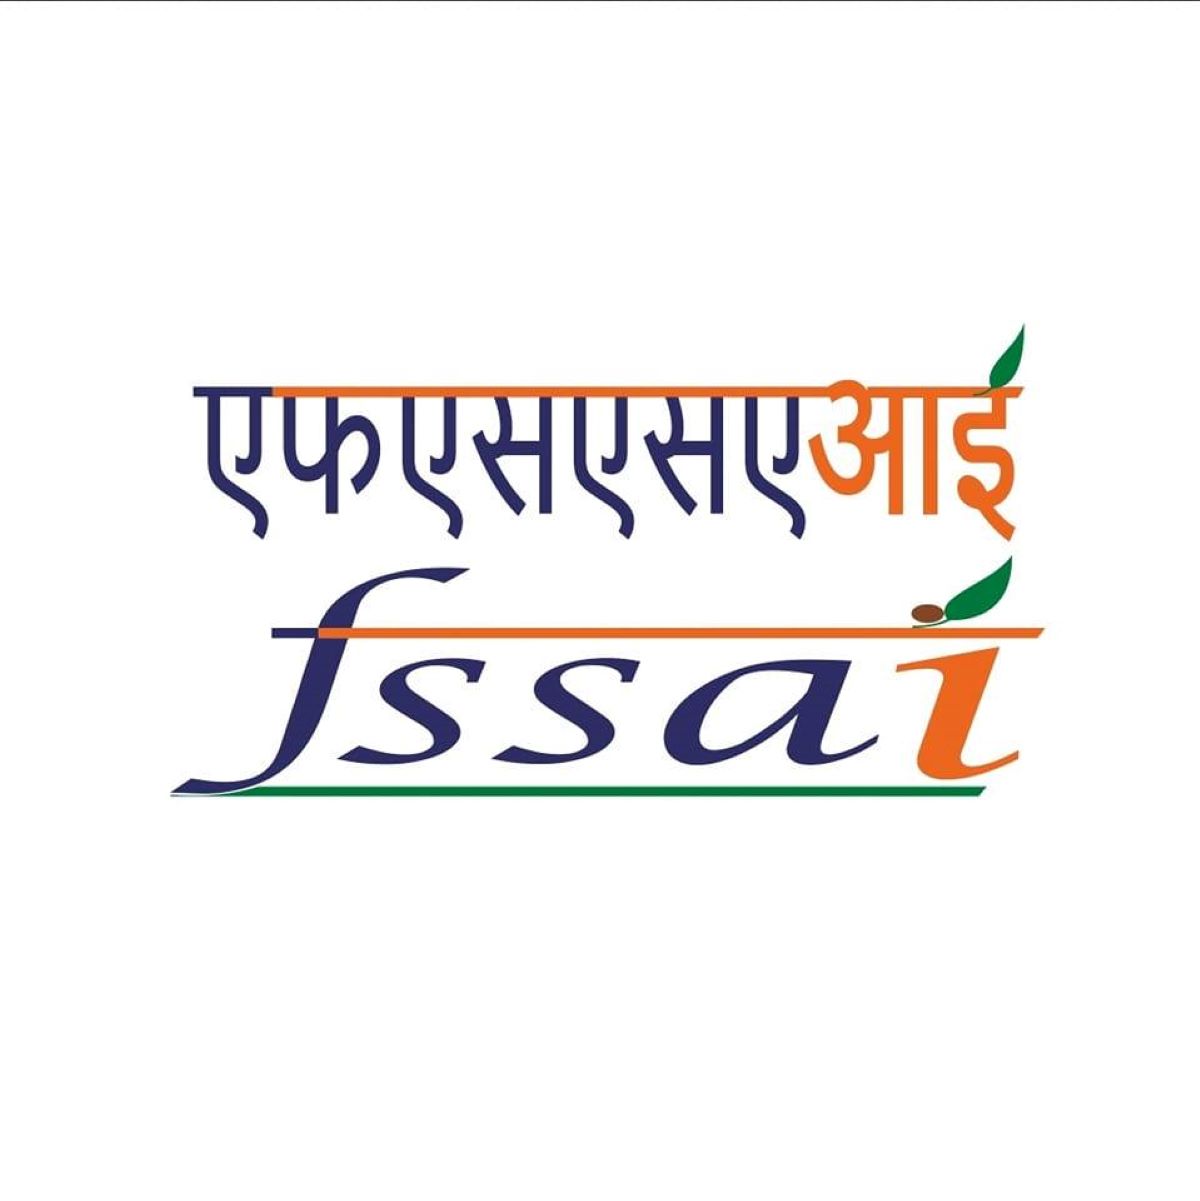 FSSAI Certification Number